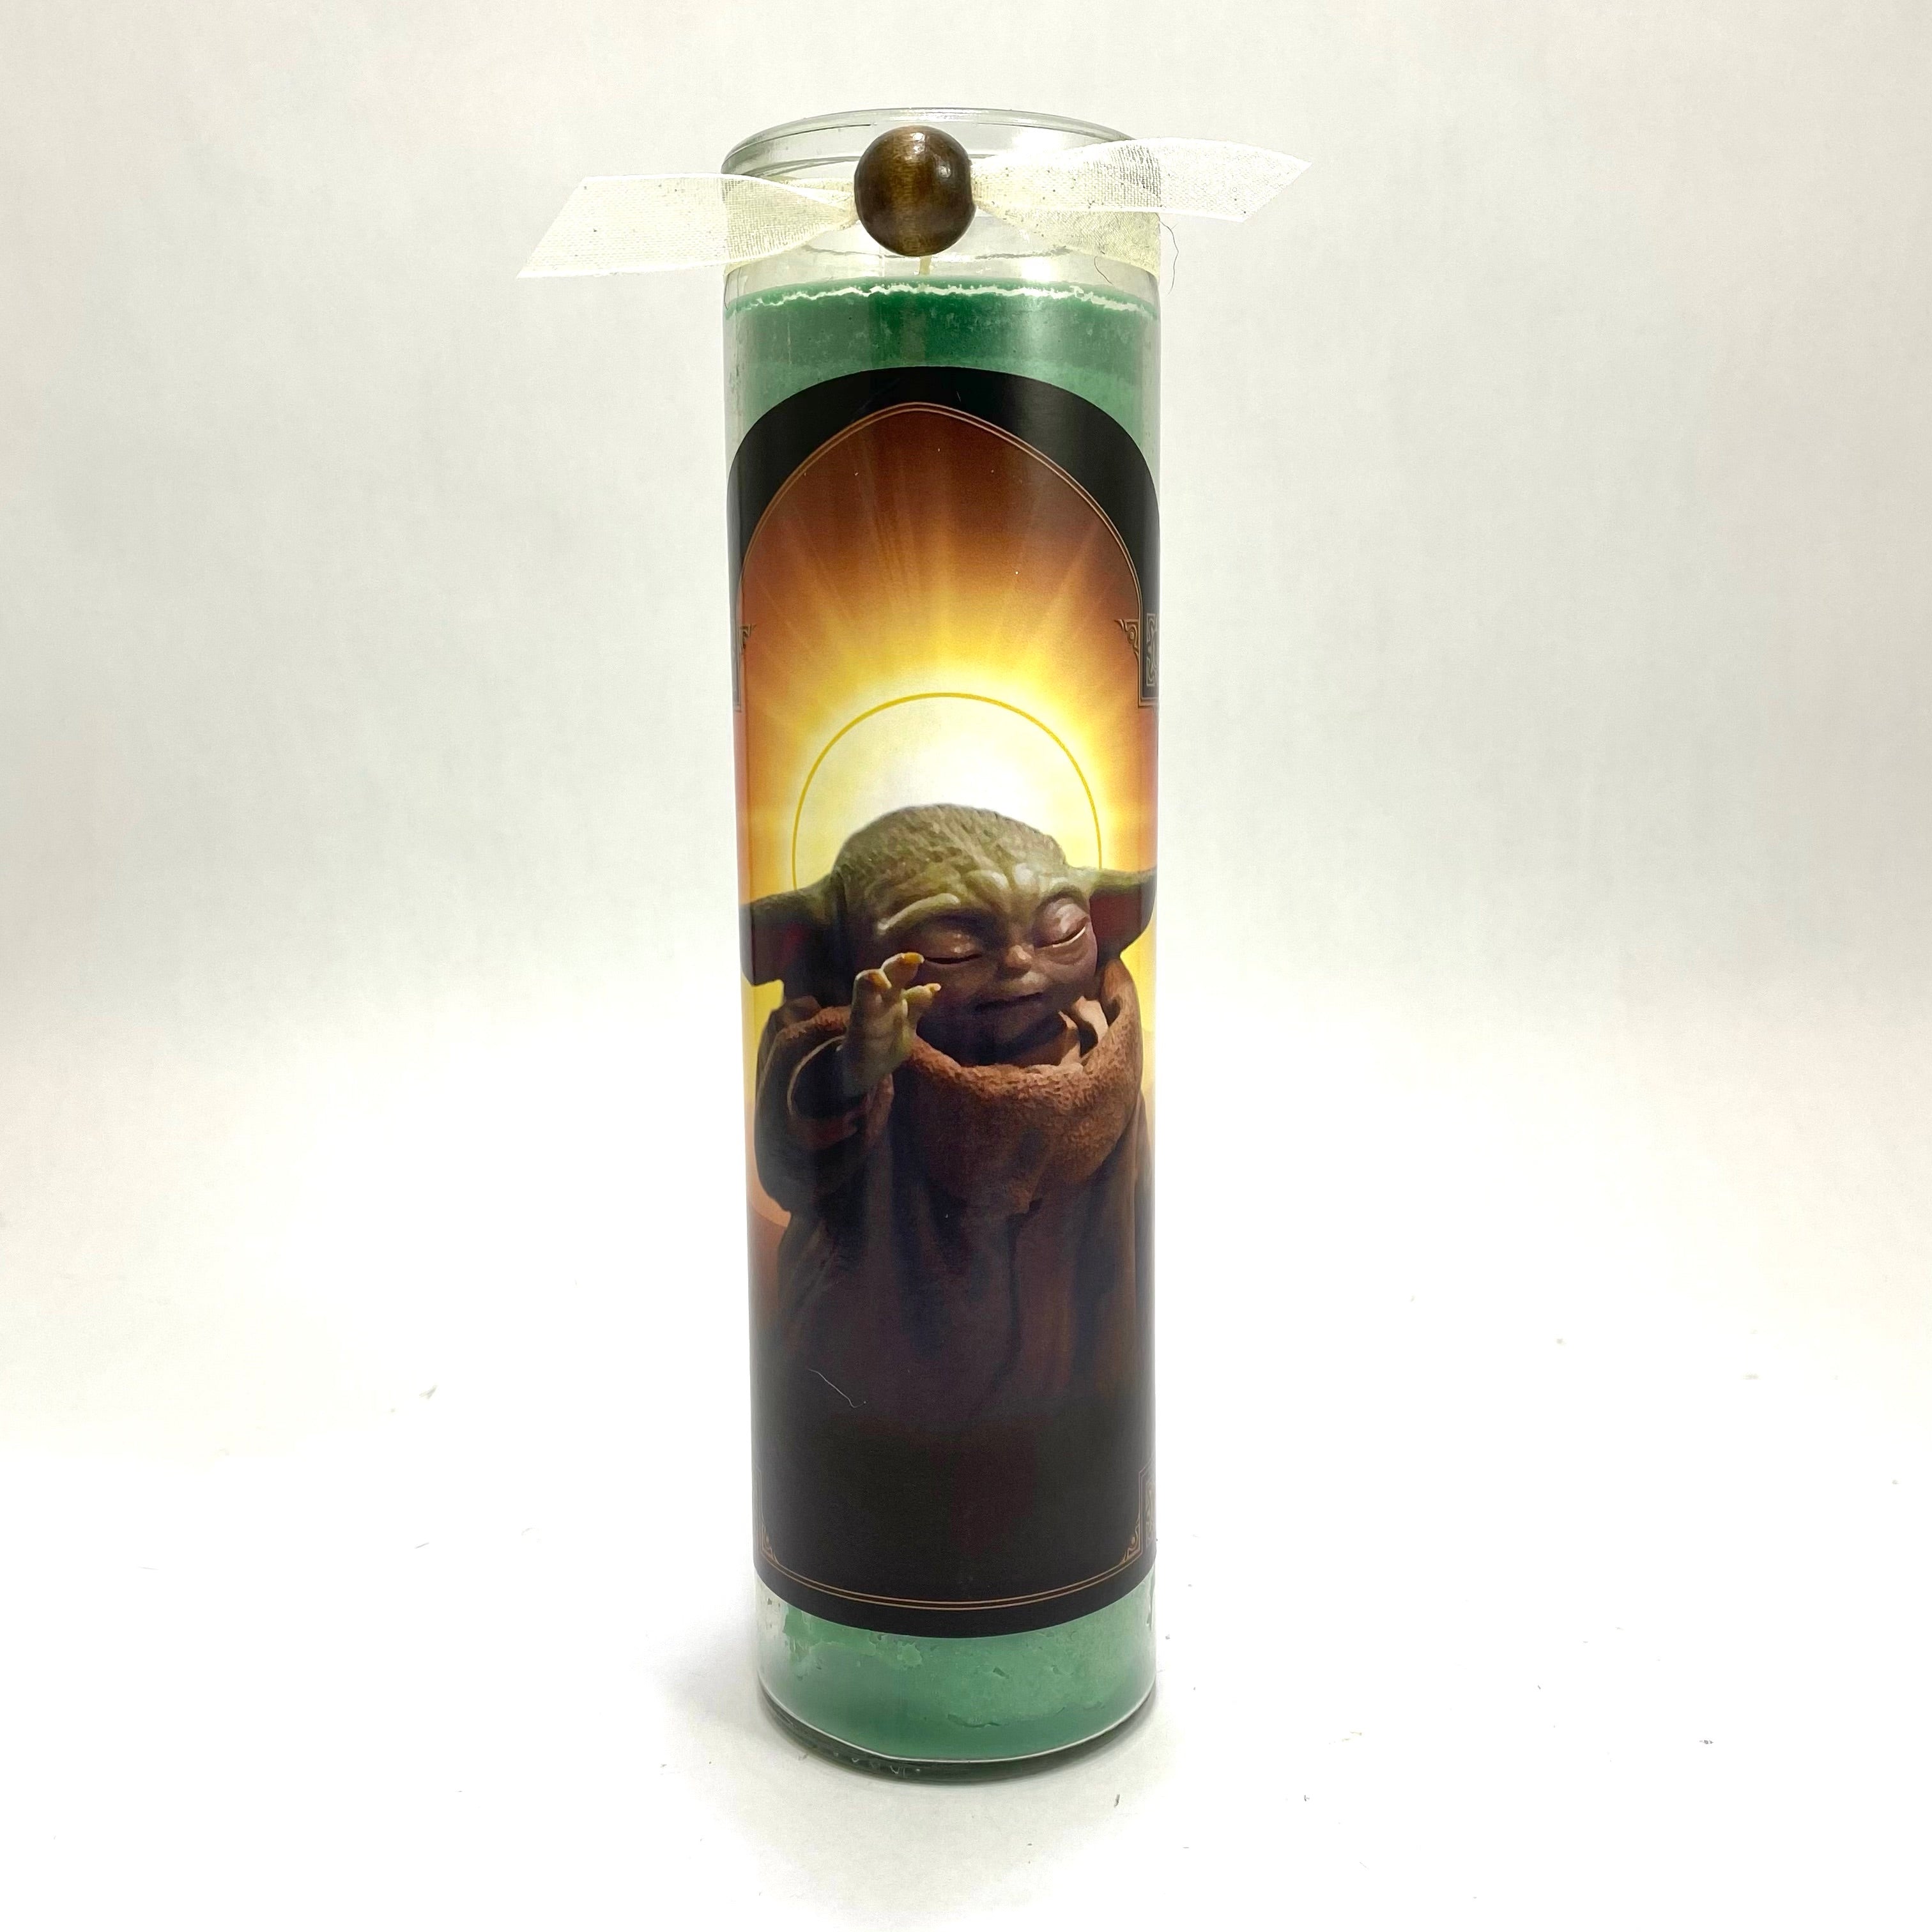 Baby Yoda / Grogu Inspired Candle